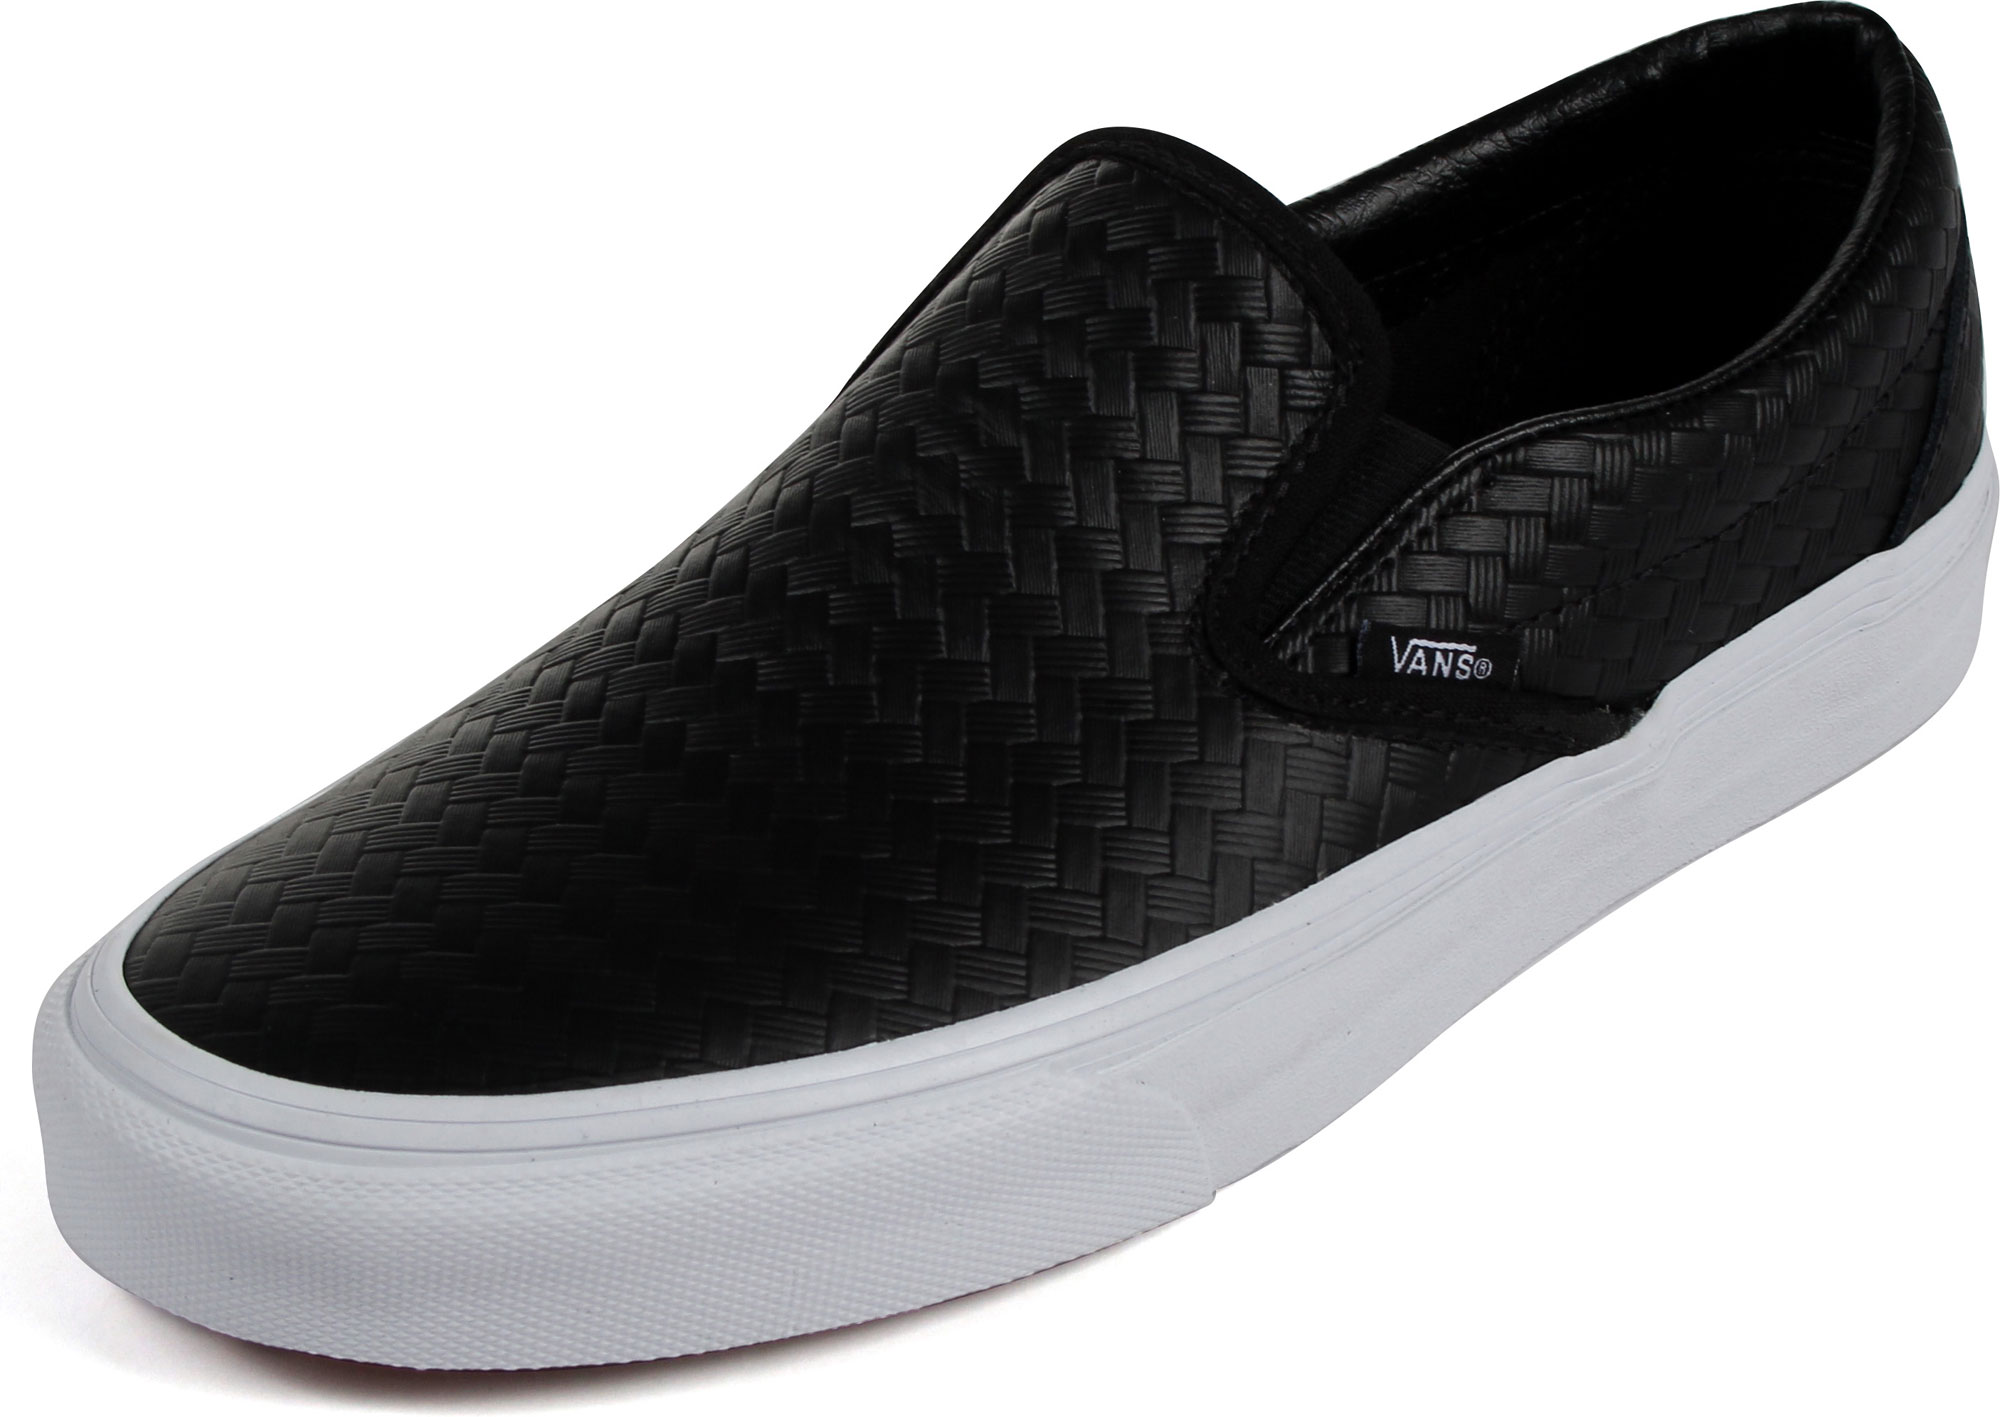 Vans - Unisex Classic Slip-On Shoes